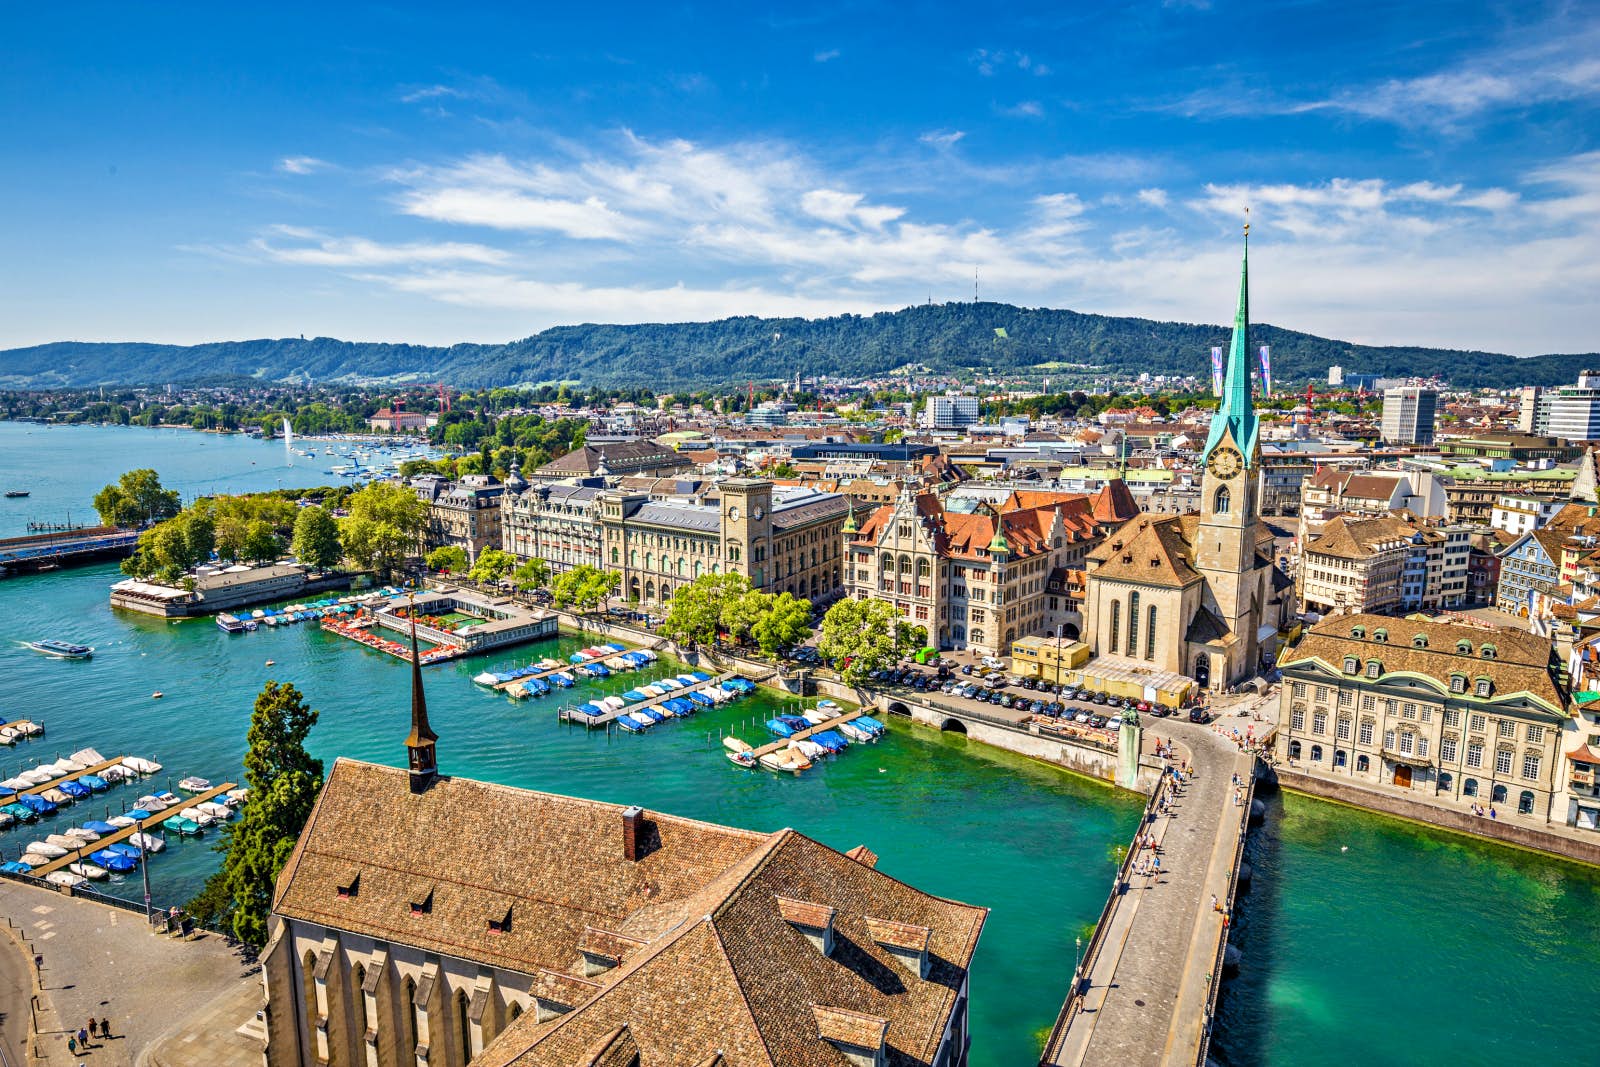 Tại sao Zurich đứng đầu trong bảng xếp hạng thành phố thông minh mới nhất - Ảnh 1.